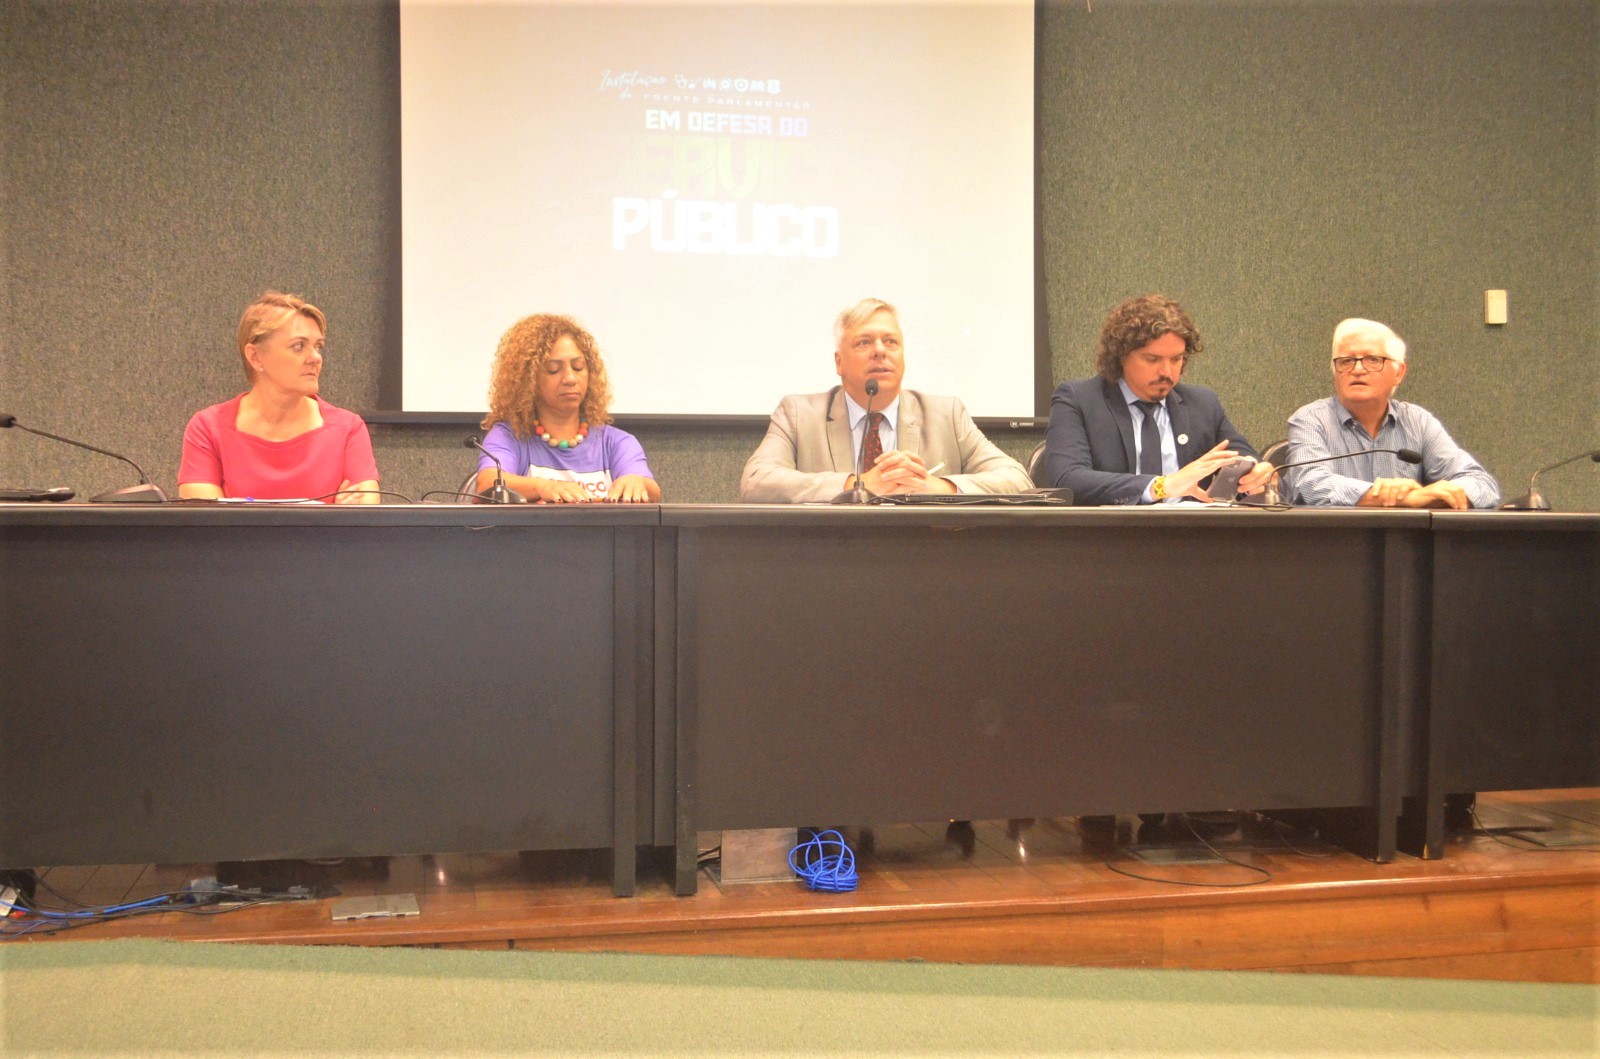 À mesa, da esquerda para direita: dep. Luciane Carminatti (PT), Jucélia Vargas (Confetam), dep. Fabiano da Luz (PT), dep. Marquito (PSOL) e José Fritch (Superintendente do Ministério do Desenvolvimento Agrário).